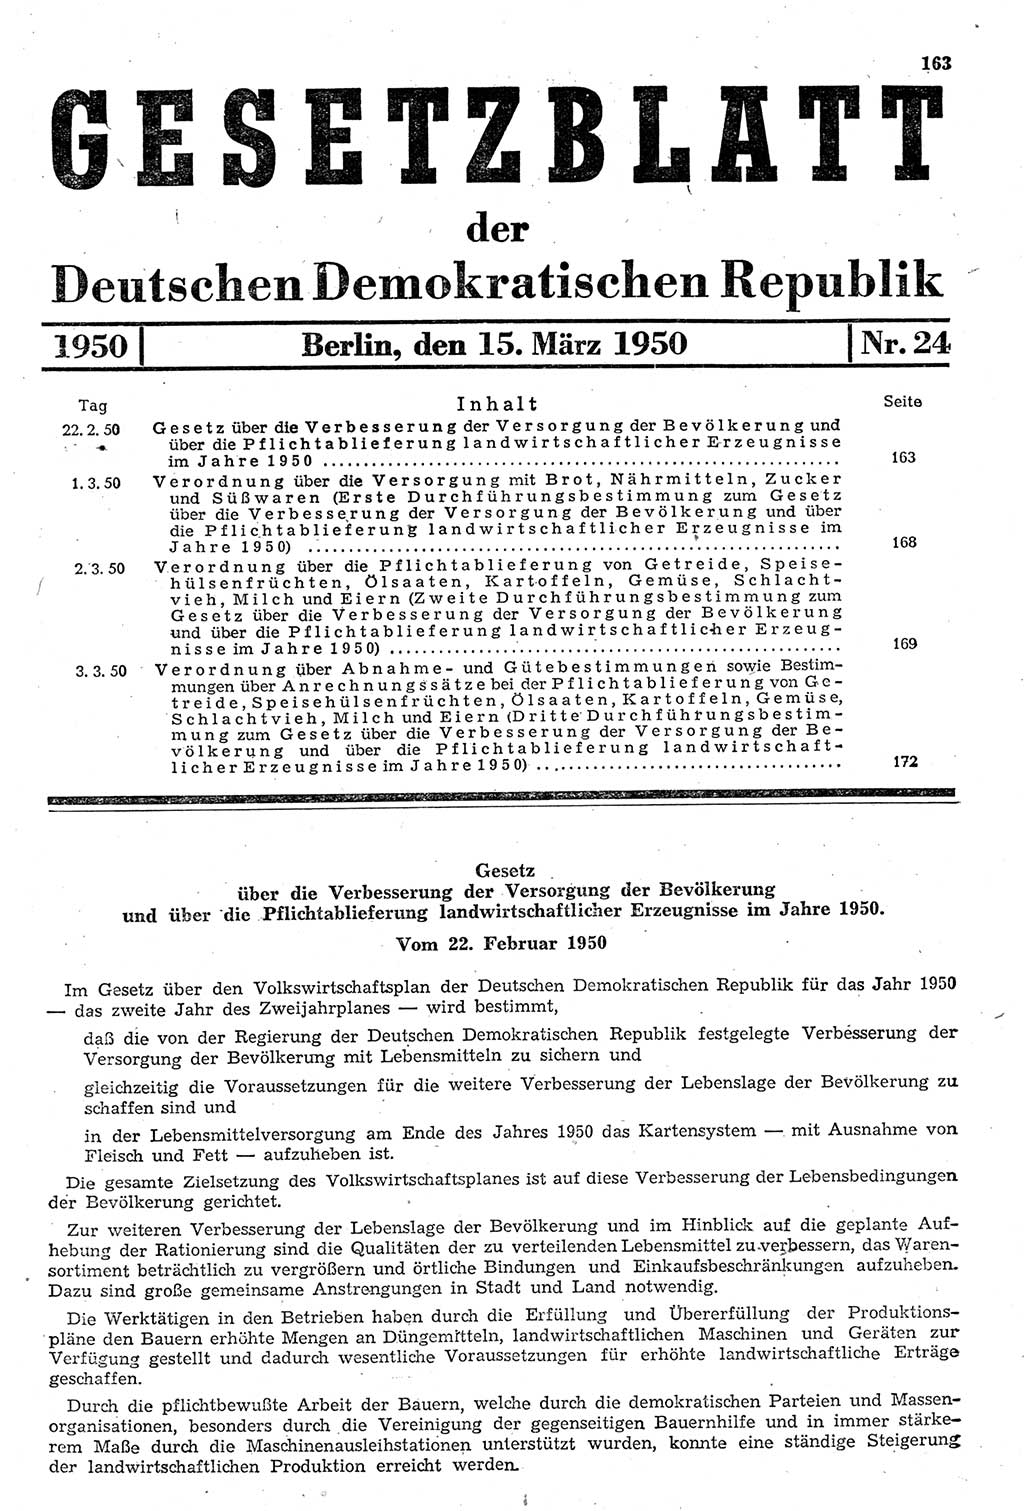 Gesetzblatt (GBl.) der Deutschen Demokratischen Republik (DDR) 1950, Seite 163 (GBl. DDR 1950, S. 163)